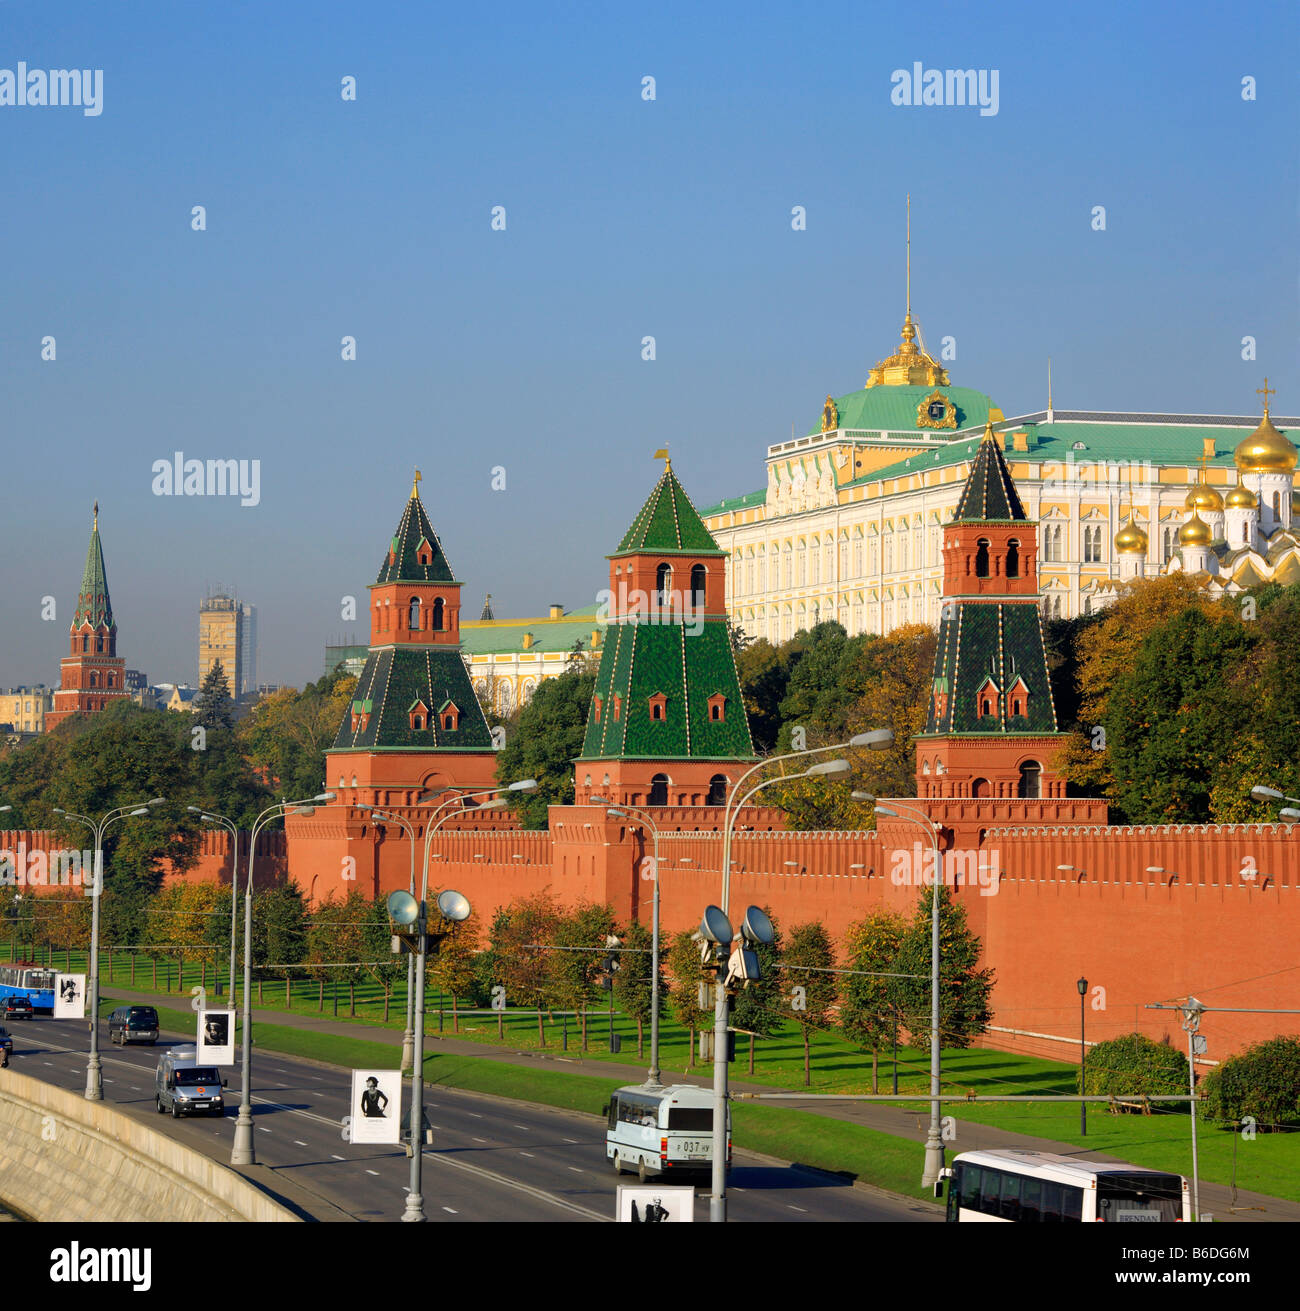 Architektur der Stadt, Blick auf roten Mauer des Kremls vom Ufer der Moskwa, Moskau, Russland Stockfoto